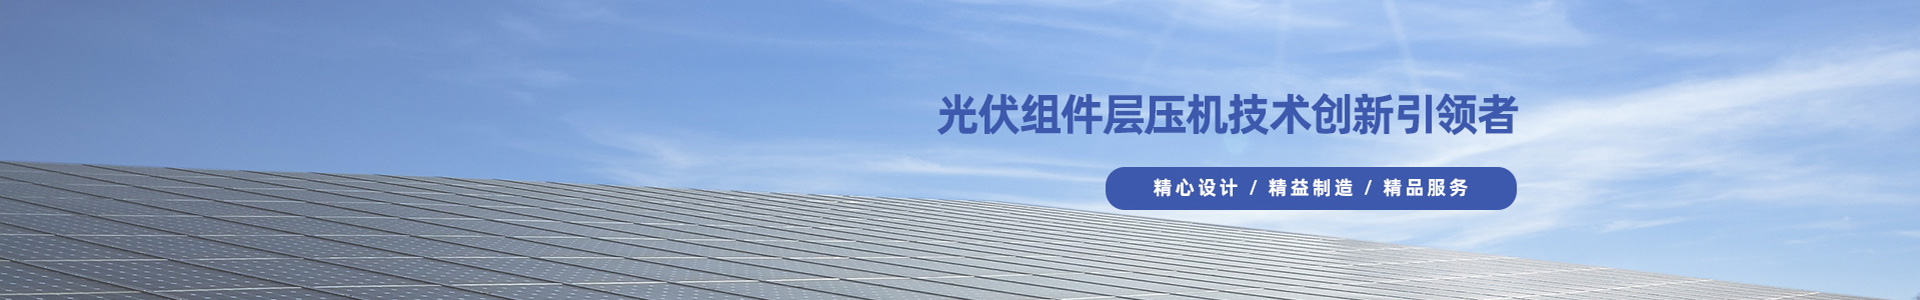 上海光伏组件|上海太阳能自动生产线|上海电加热层压机-上海申科技术有限公司